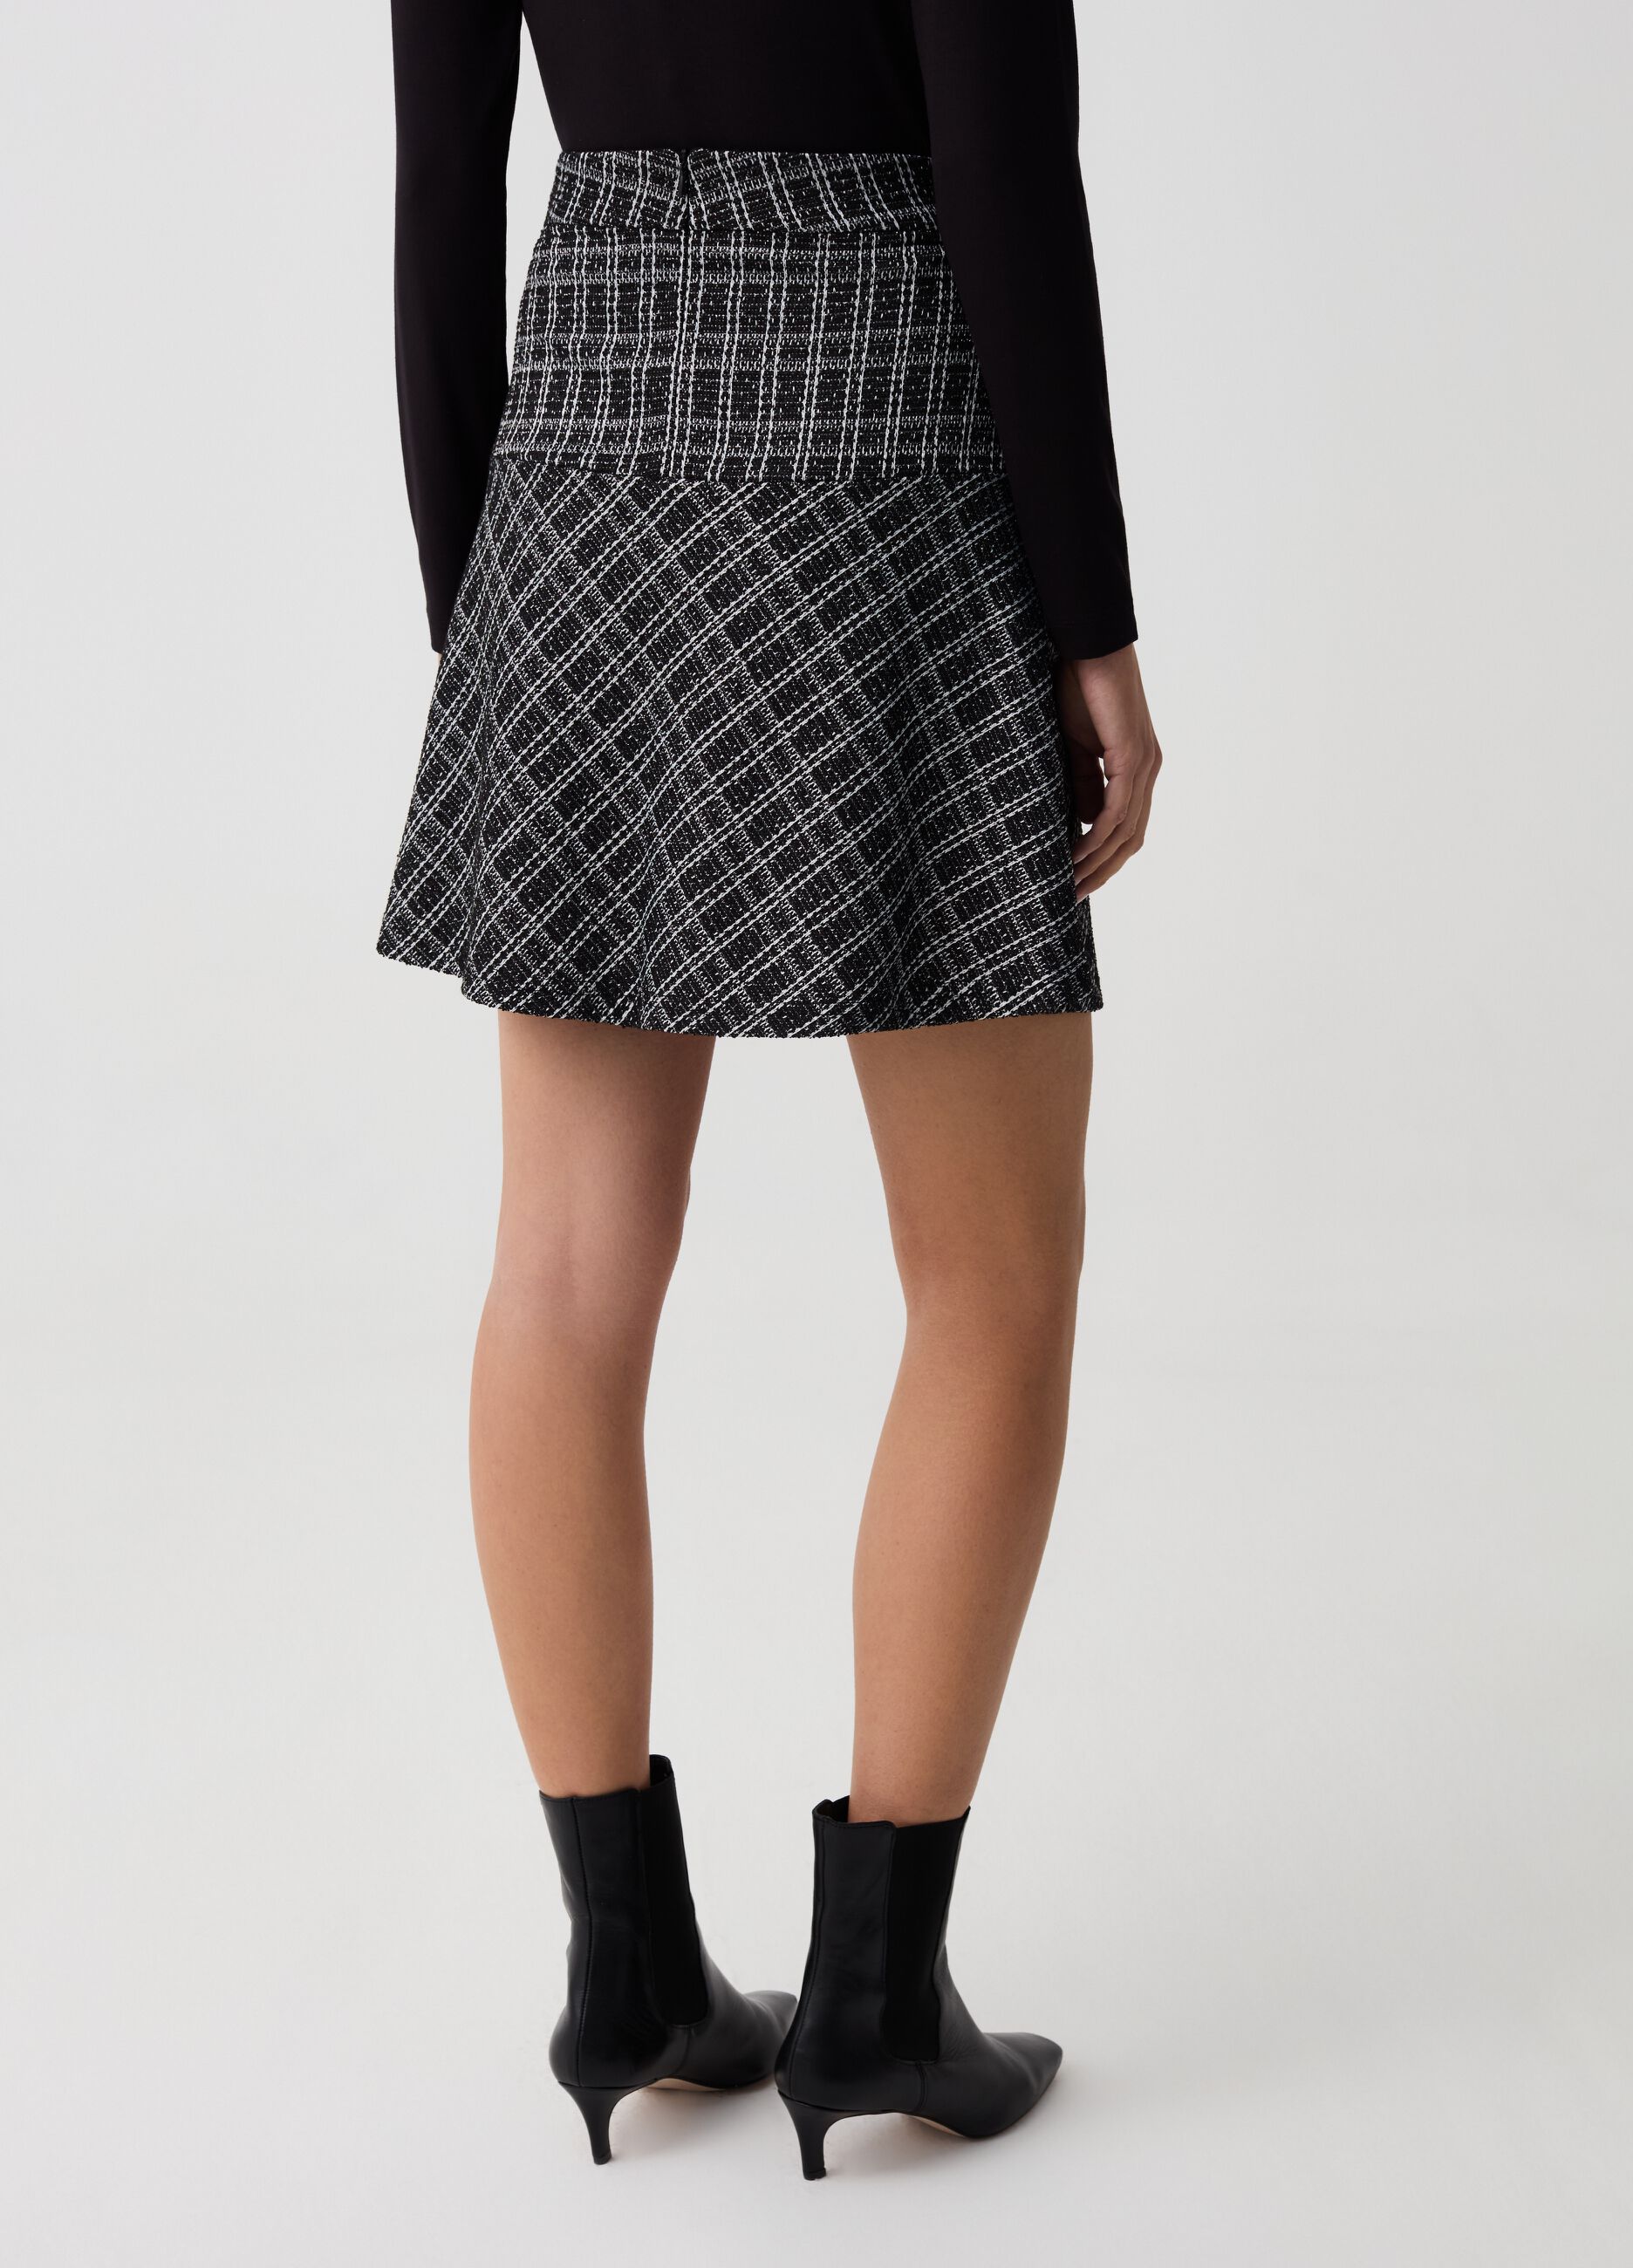 Short full skirt in patterned lurex